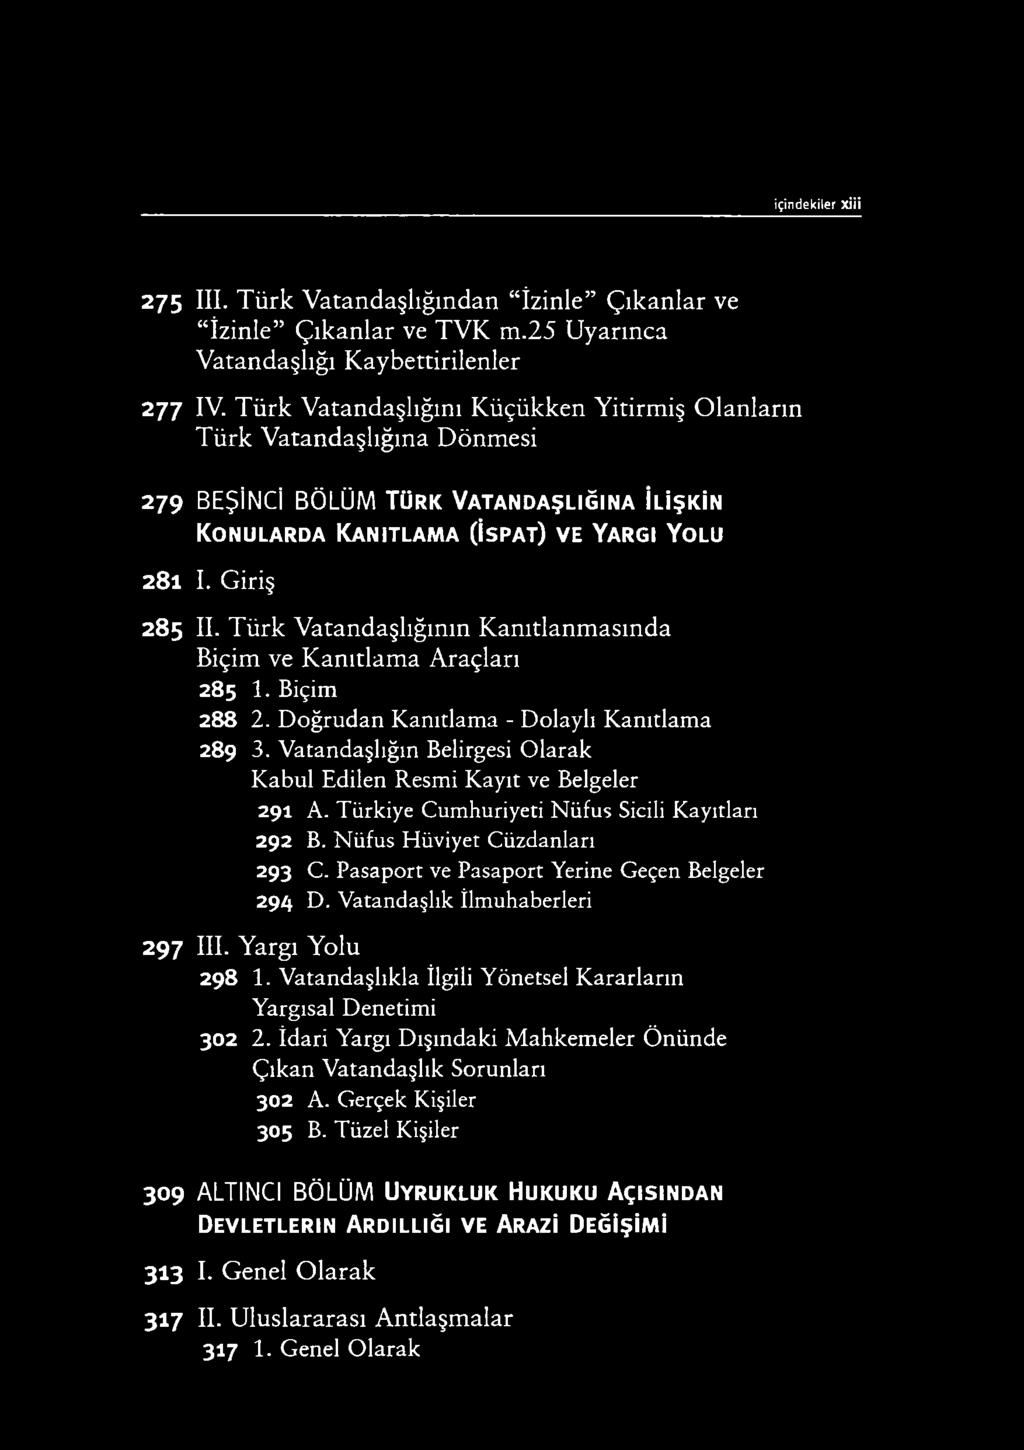 i Y o lu 281 I. Giriş 28 5 II. Türk Vatandaşlığının Kanıtlanm asında Biçim ve K anıtlam a Araçları 285 1. Biçim 288 2. Doğrudan Kanıtlama - Dolaylı Kanıtlama 289 3.